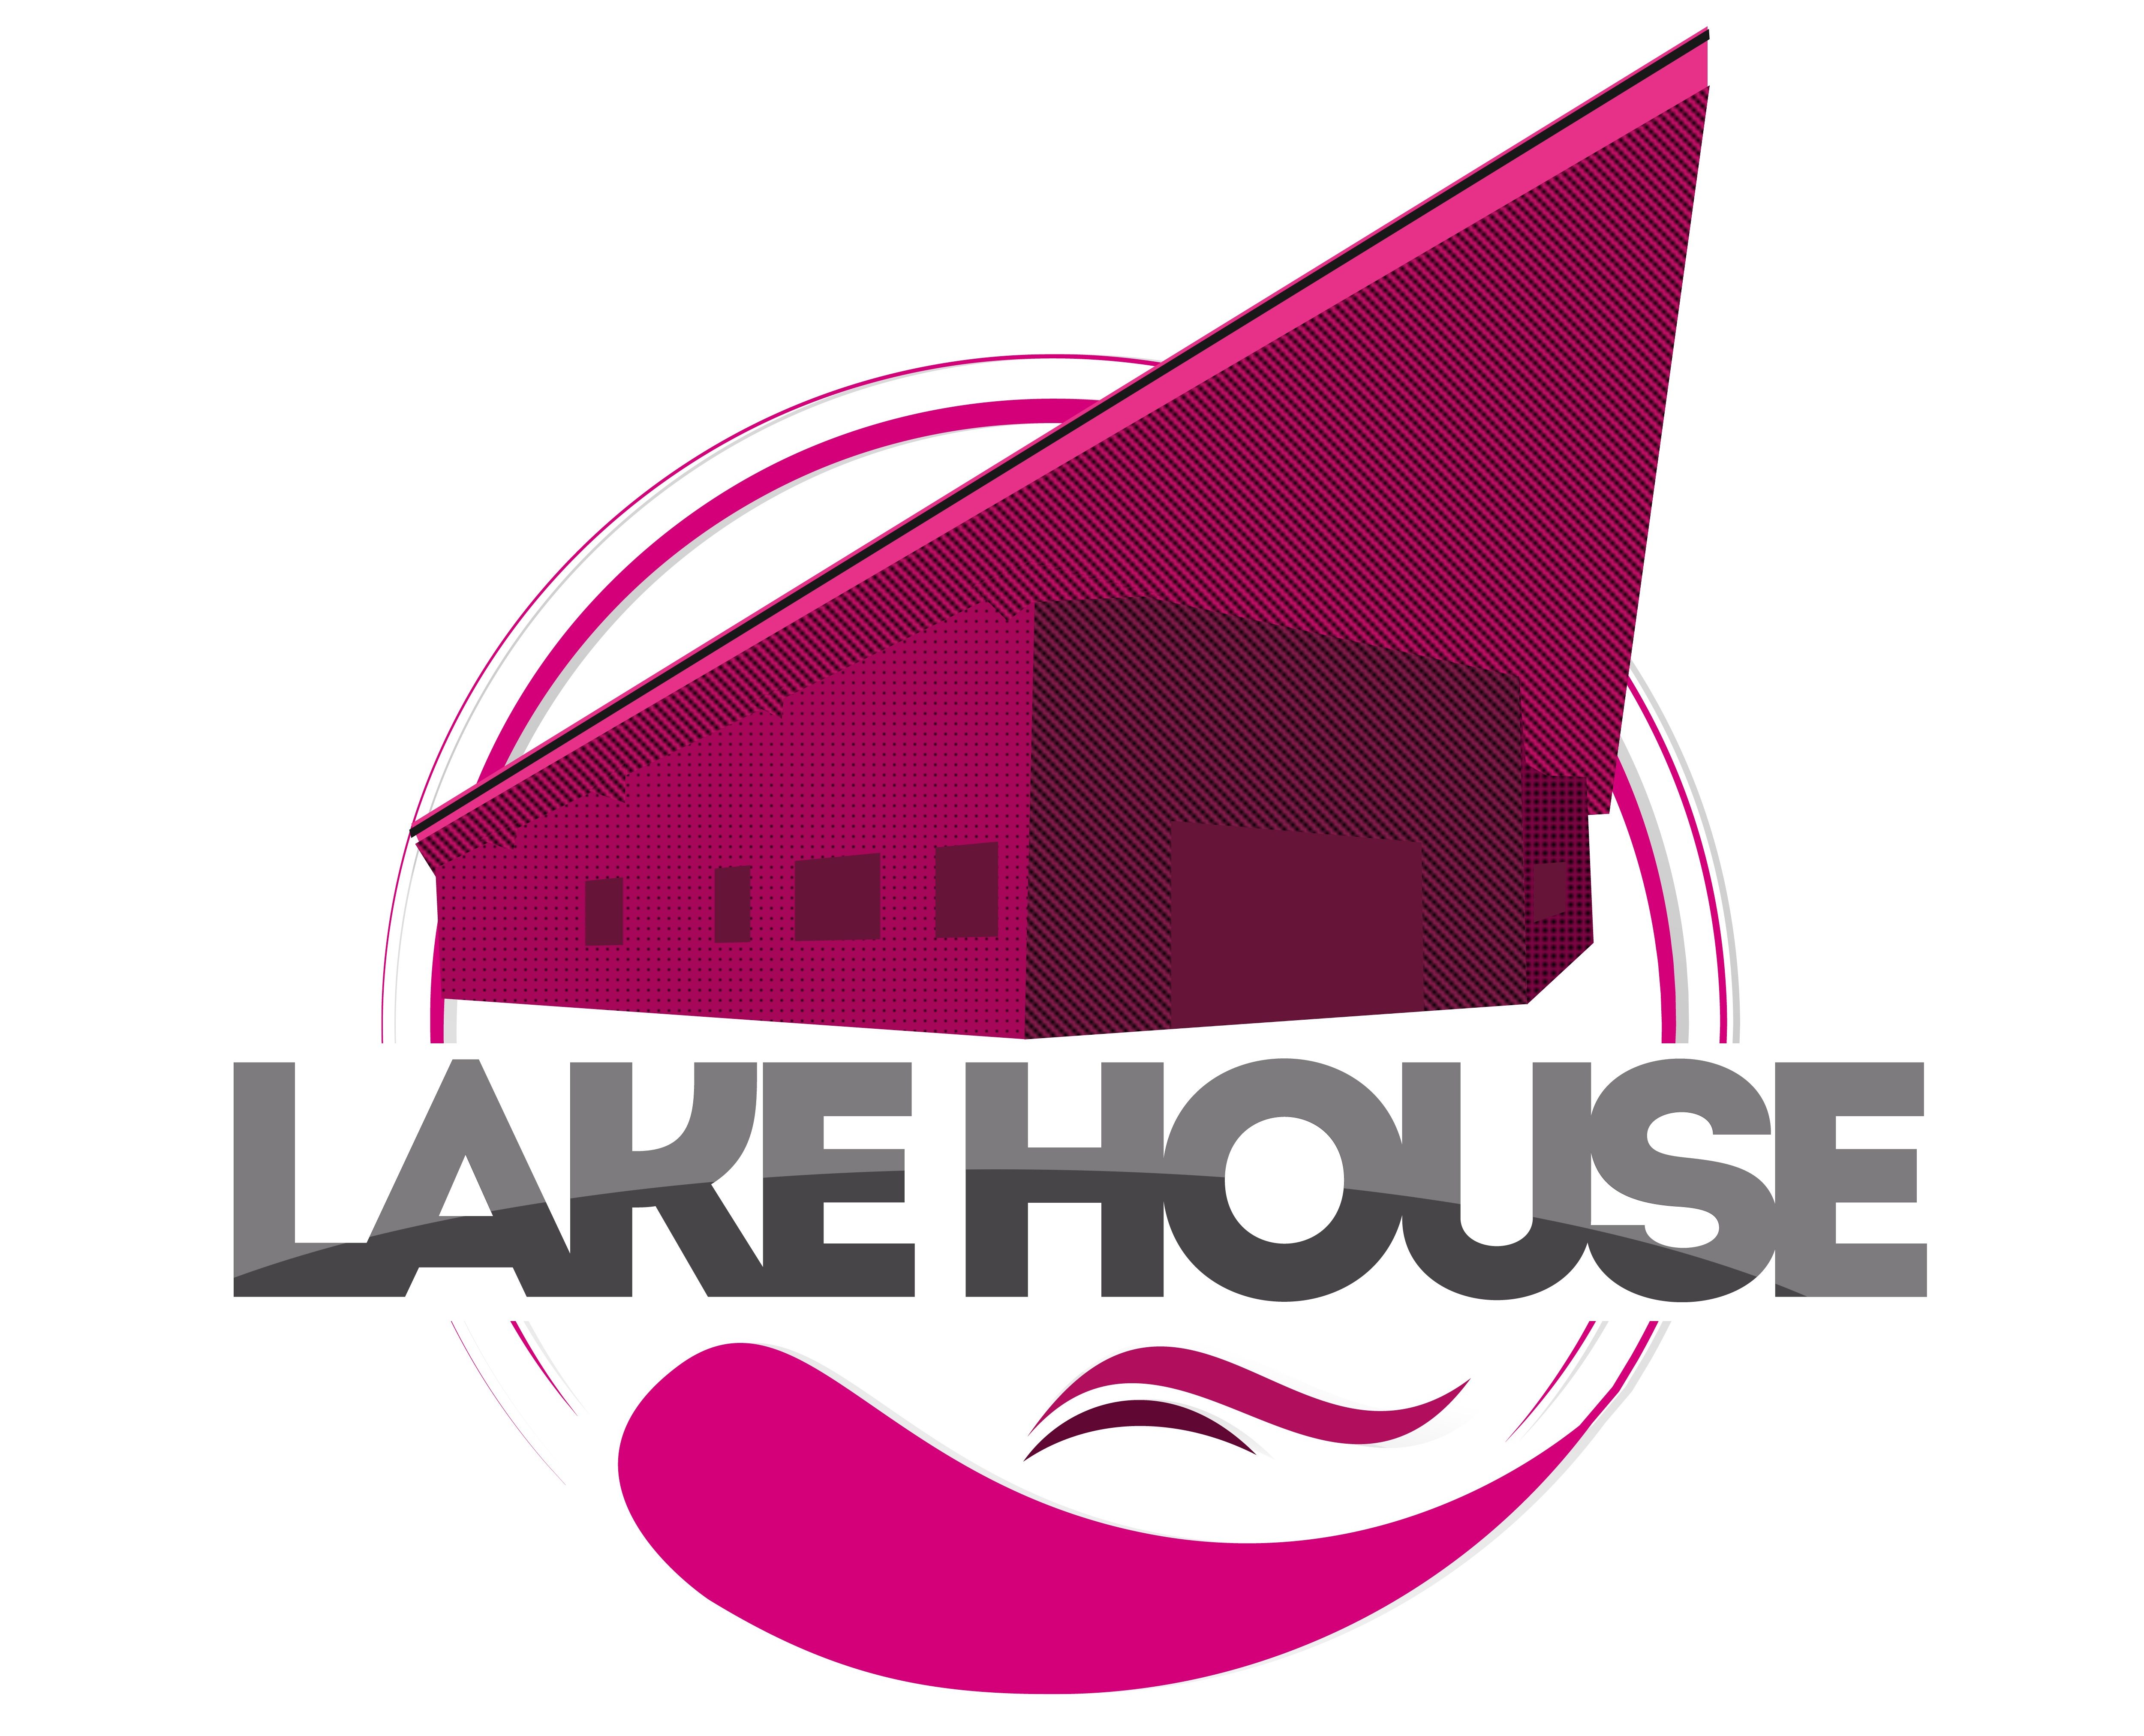 Lake House Lathum